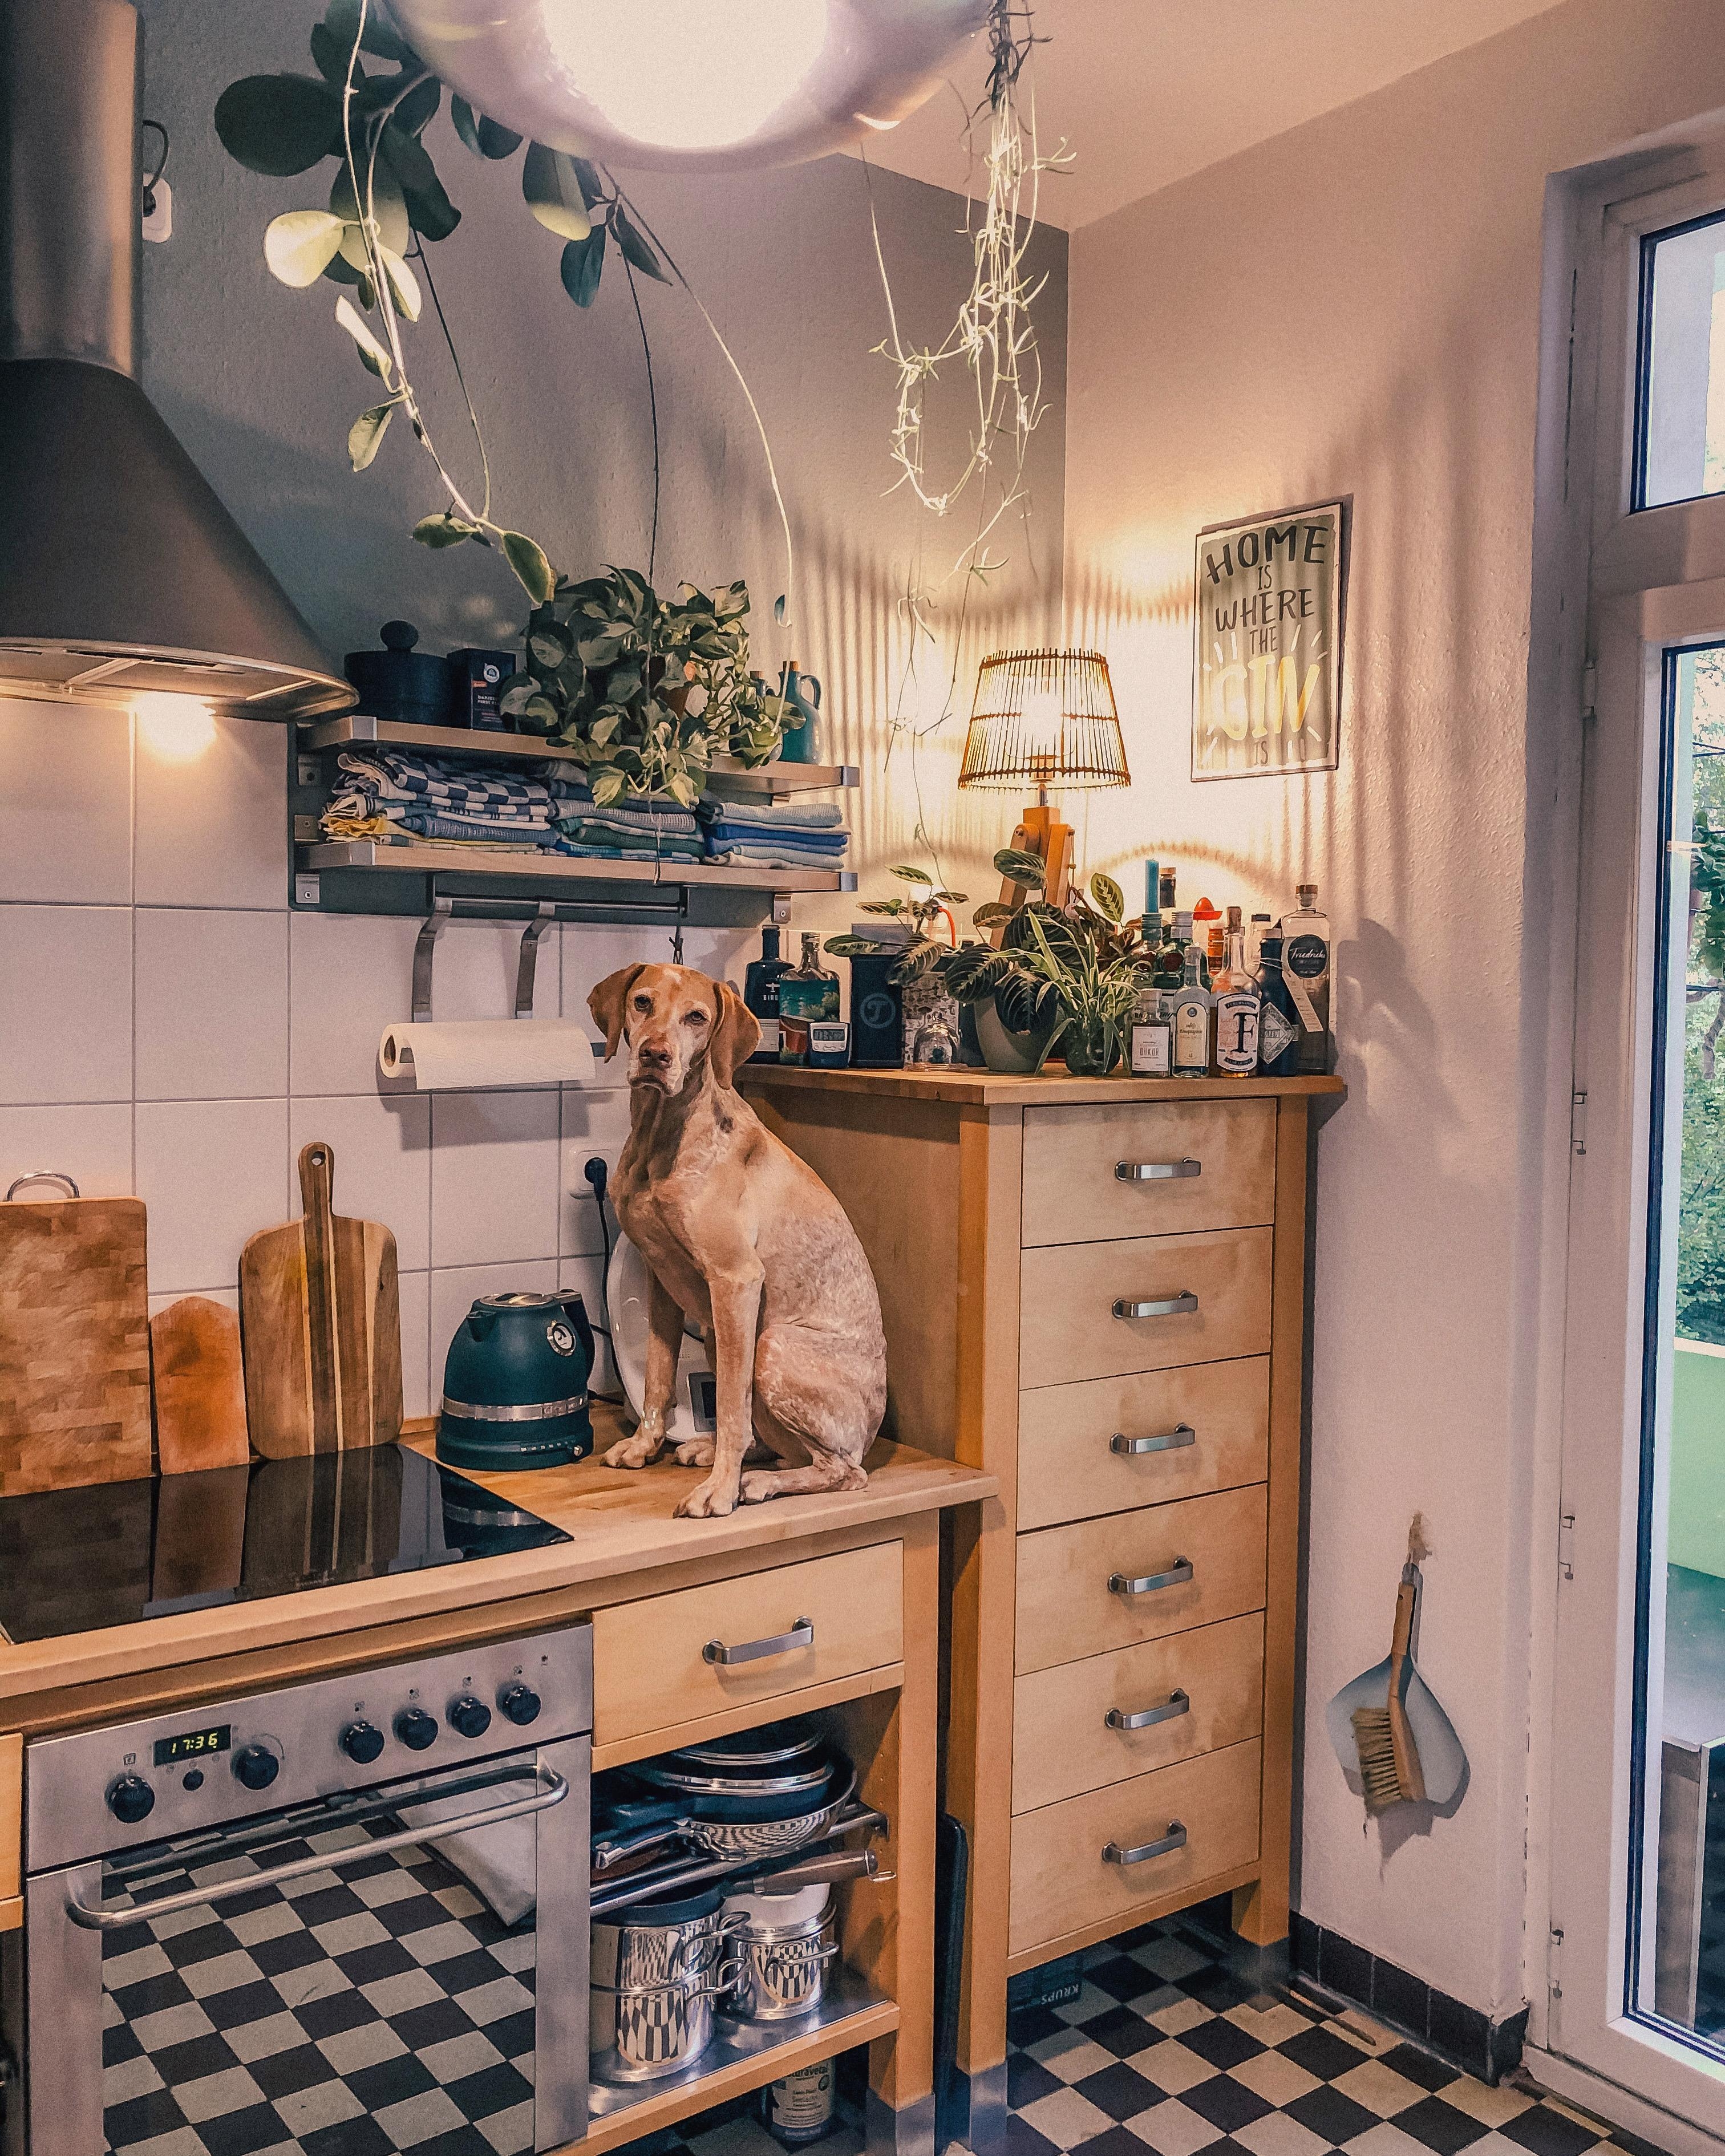 Warum immer nur Katzen auf der Arbeitsplatte 🤔
#küche #küchenliebe #homesweethome #hund #solebenwir #lieblingsplatz